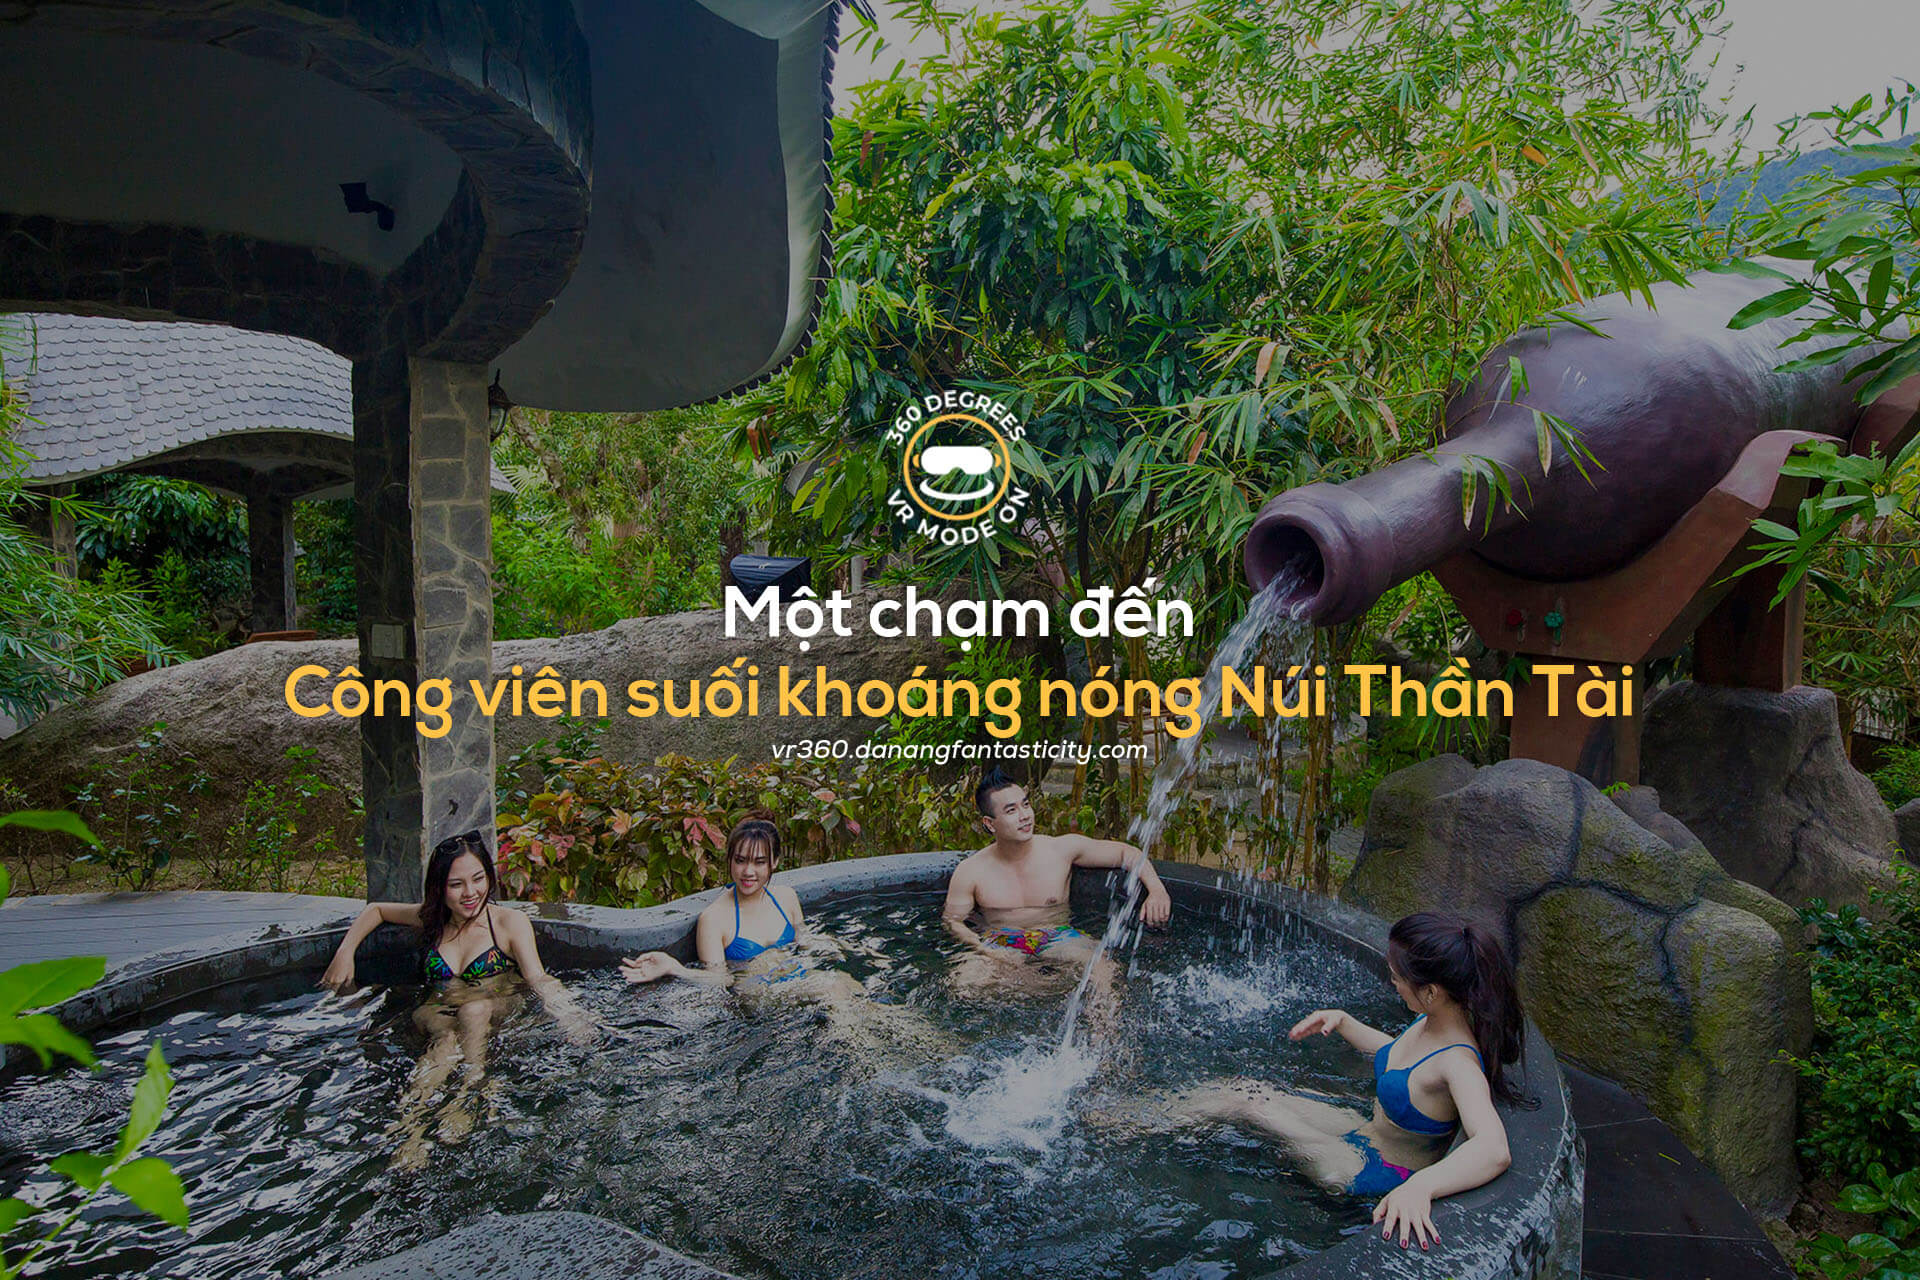 Virtual Tour Cong Vien Suoi Khoang Nong Nui Than Tai Vr360